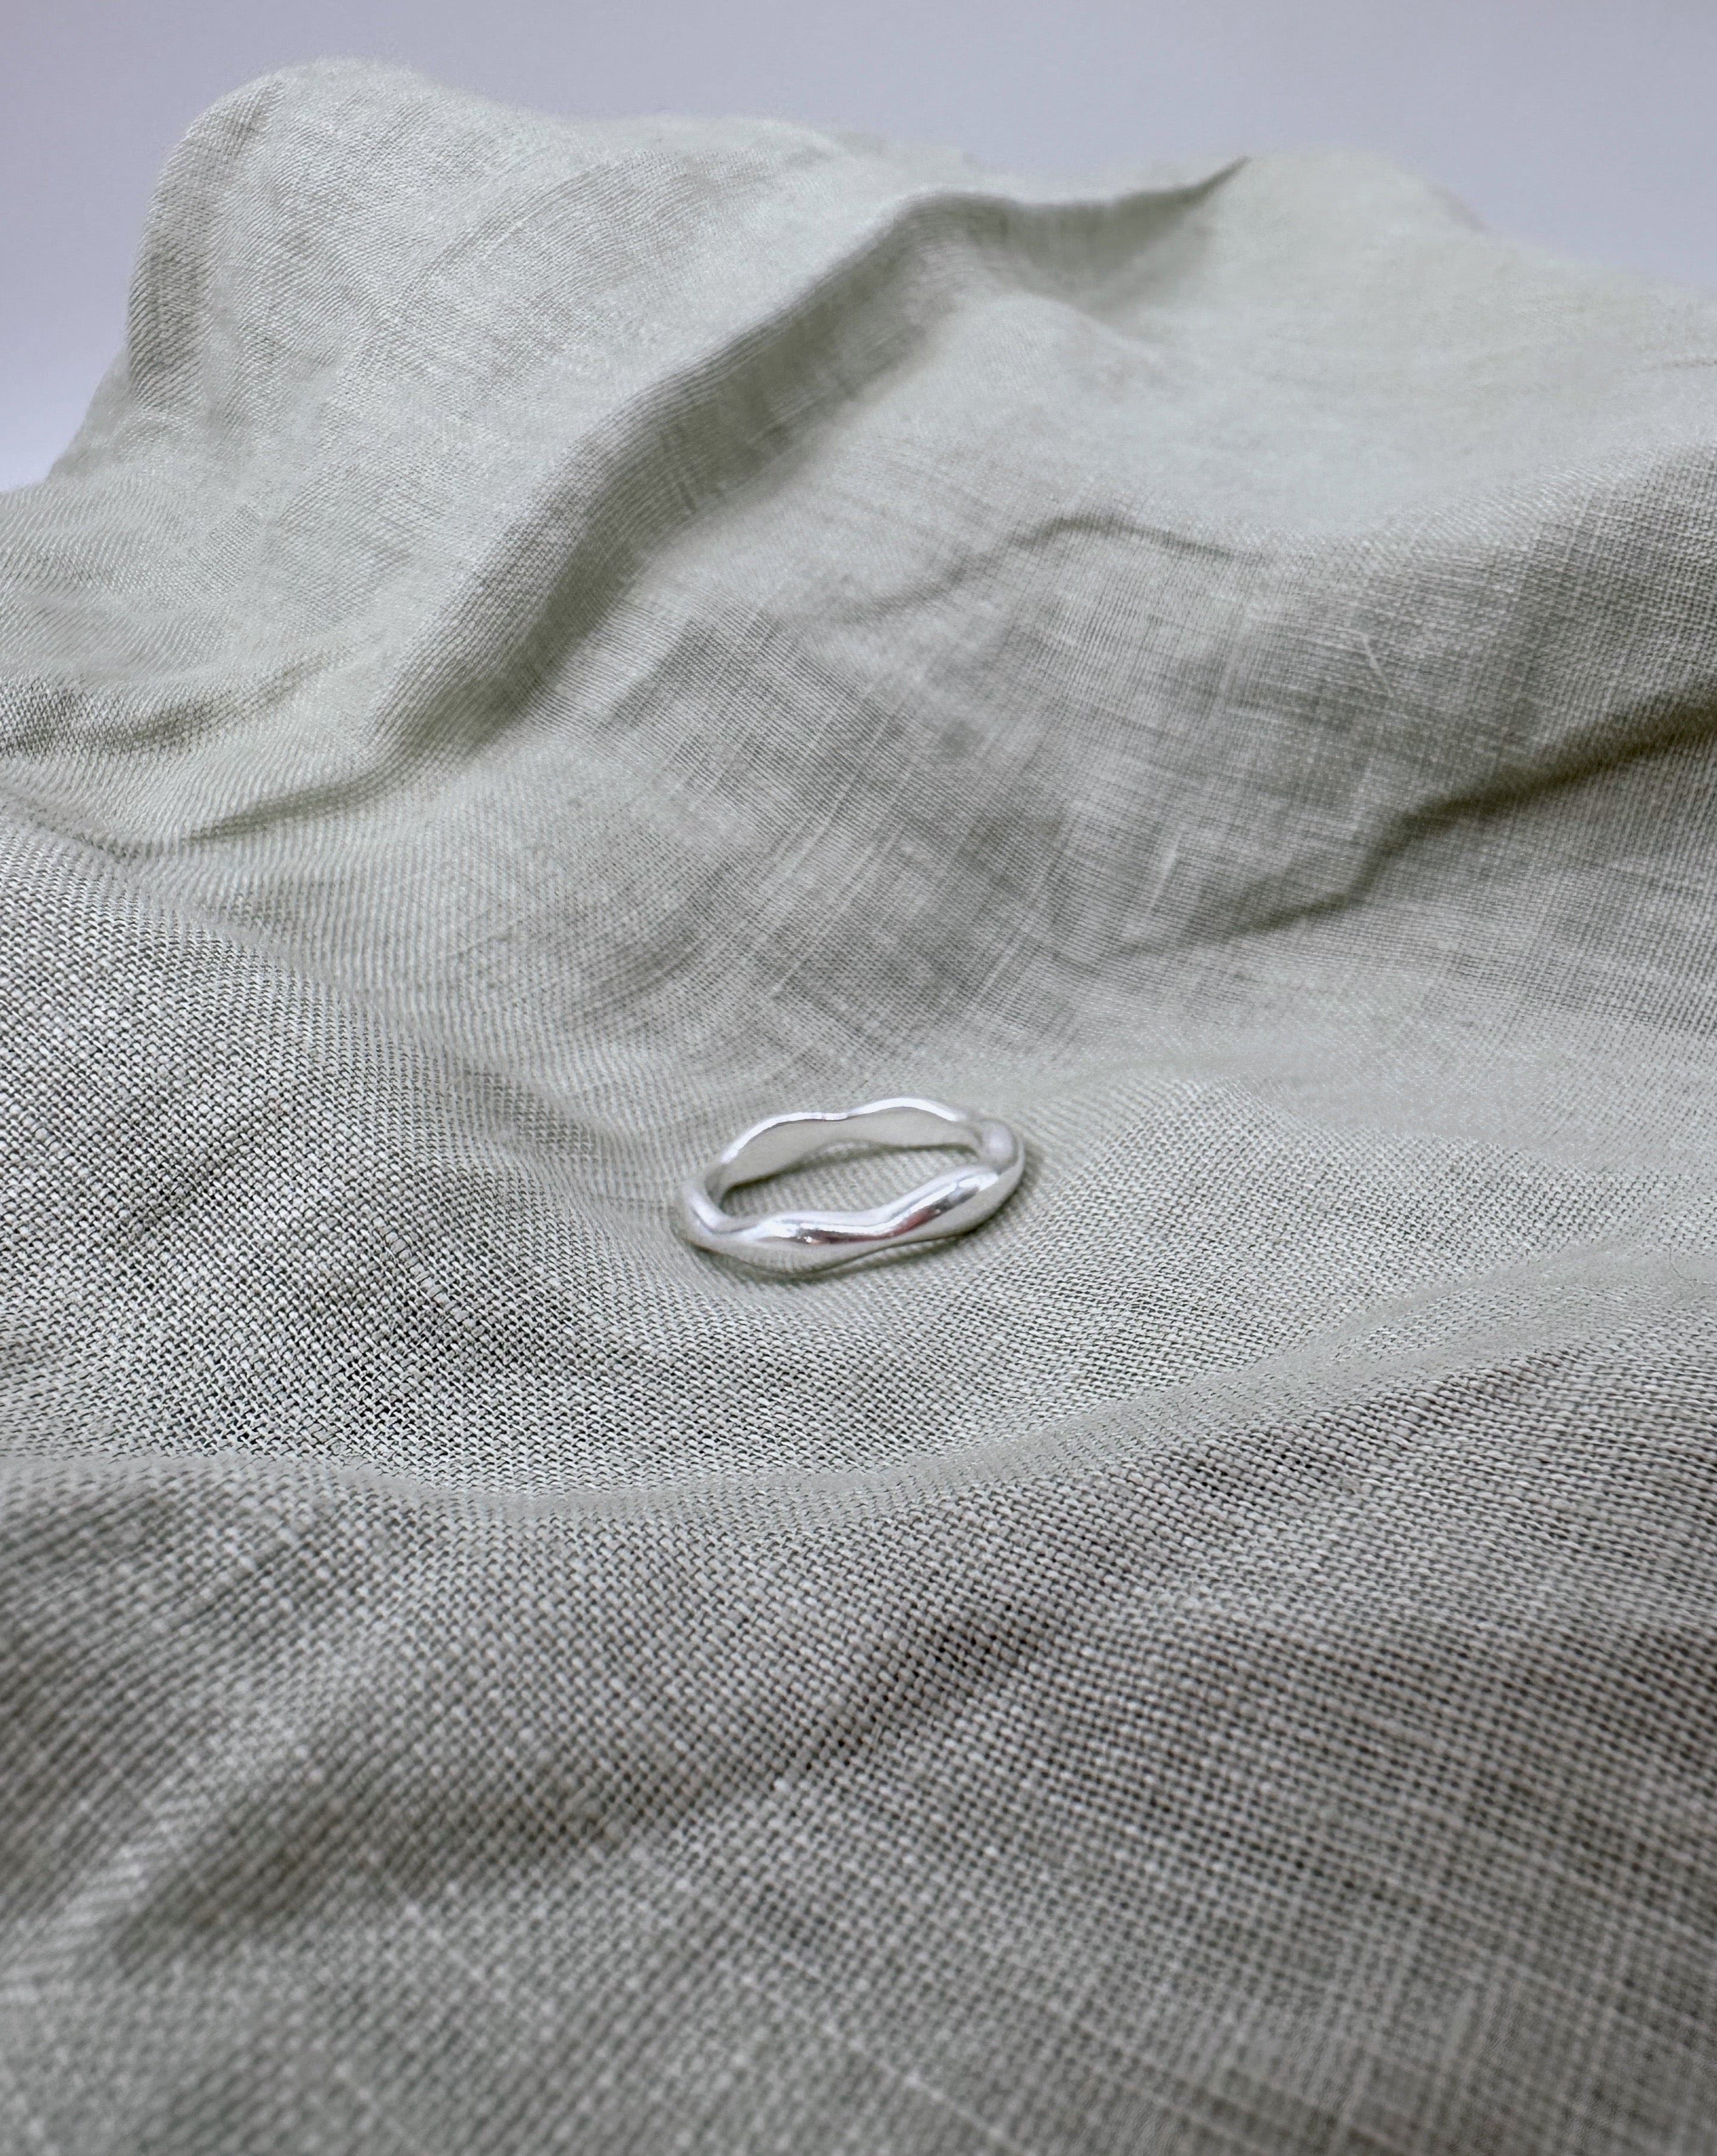 Asymetrischer Silber Ring | Wasserfester Schmuck | VERLAN Jewellery | handgemachter schmuck aus Bali | das perfekte Geschenk für Freundin finden